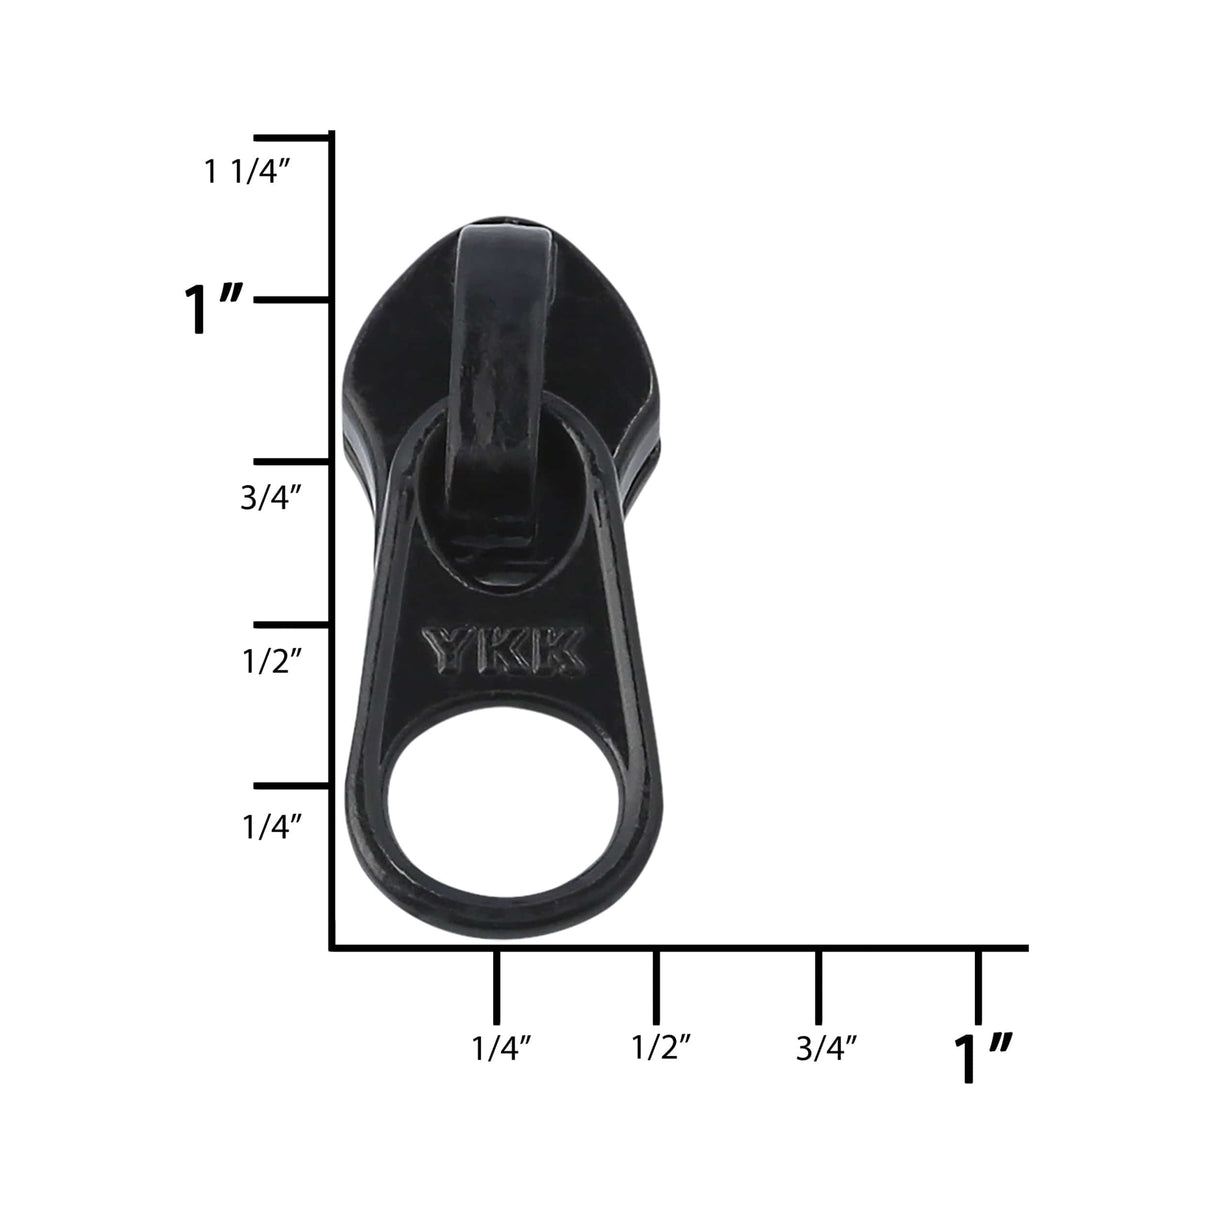 YKK #5 Molded Plastic Two-Way Jacket Bottom Slide Zipper Sliders - 10/Pack  - Black (580)